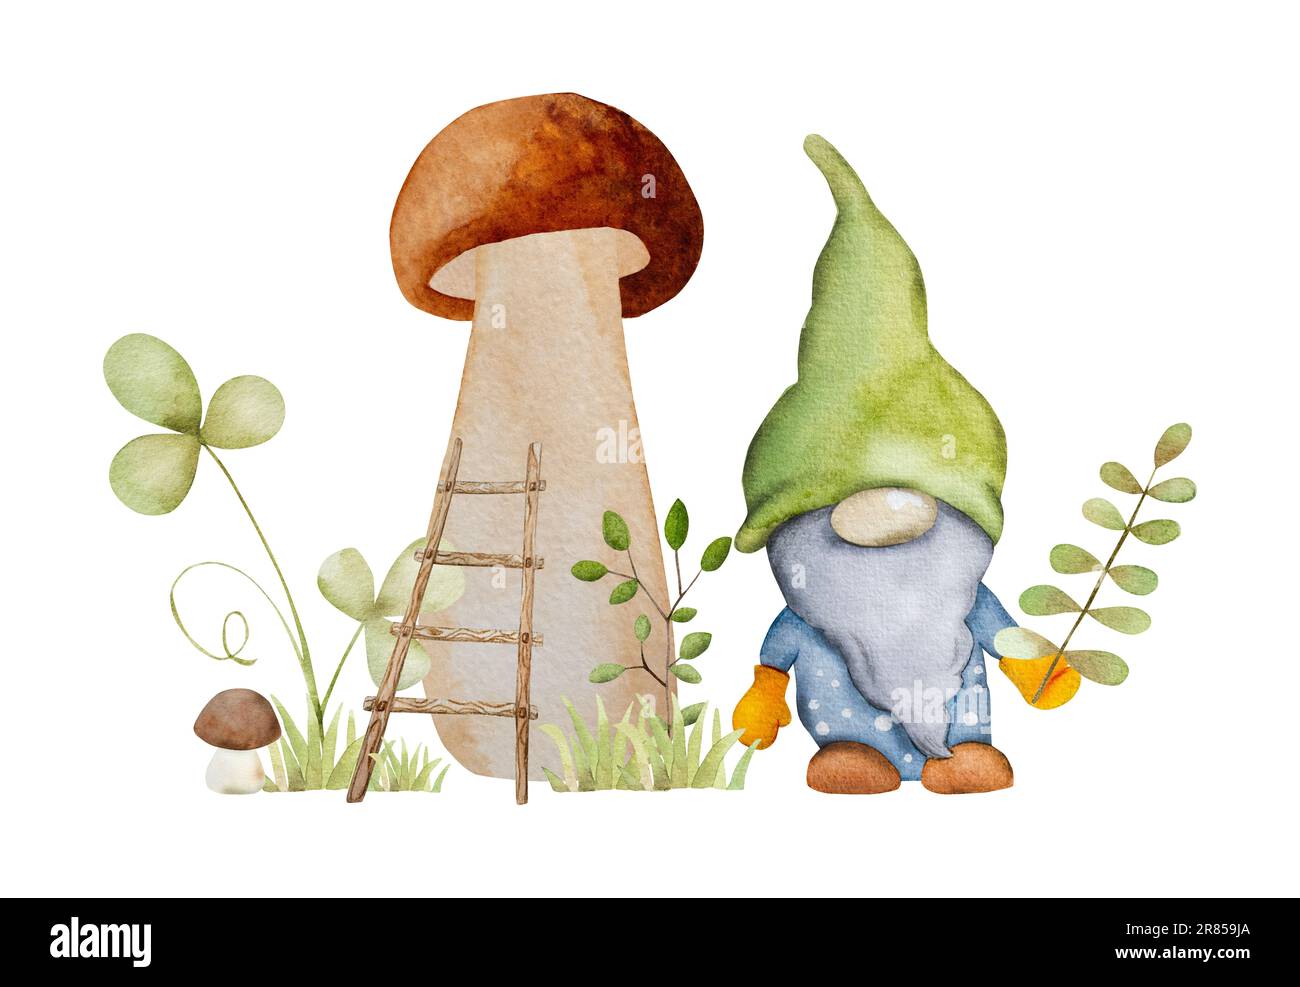 Nana forestale con fungo e scala in pittura acquerello giardino. Personaggio fiabesco gnome con agarico e foglie aquarelle disegno Foto Stock